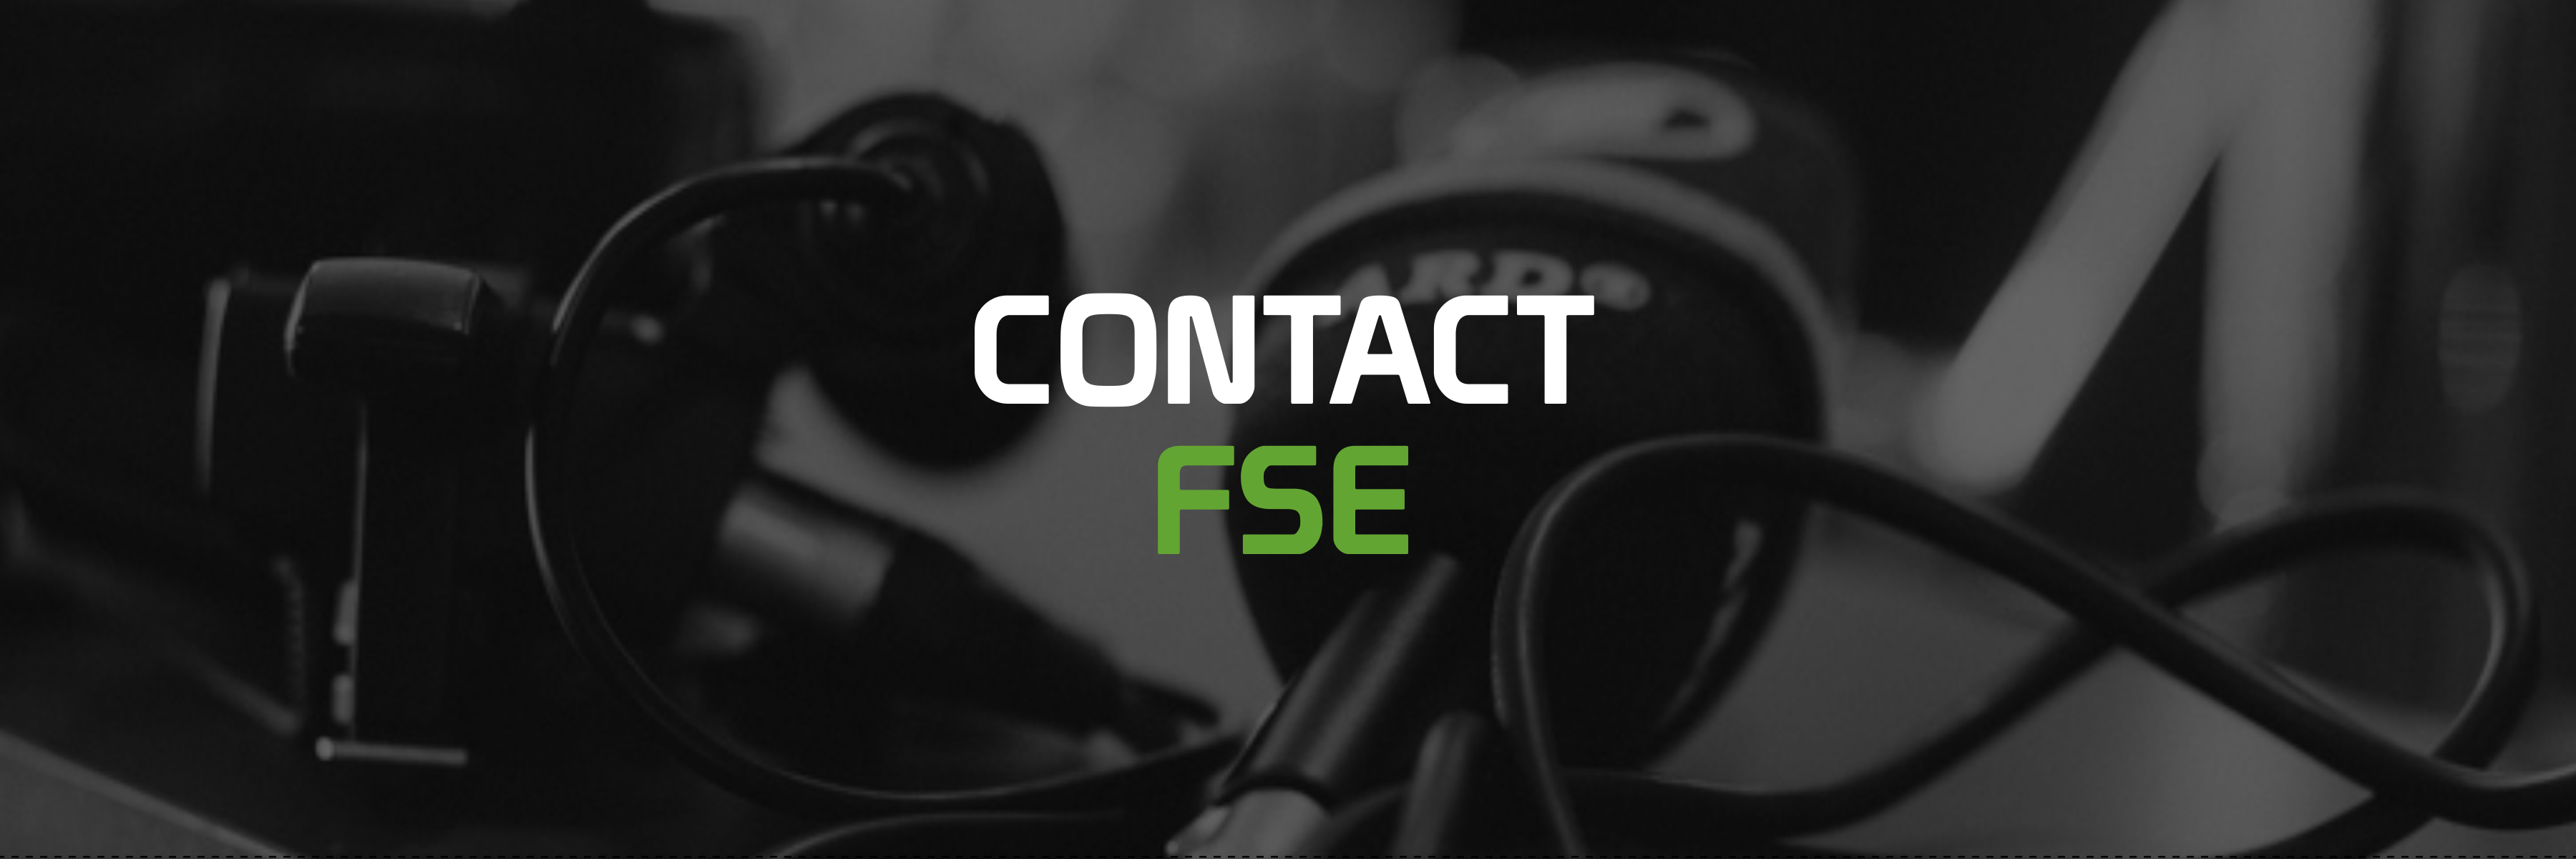 Contact FSE Banner